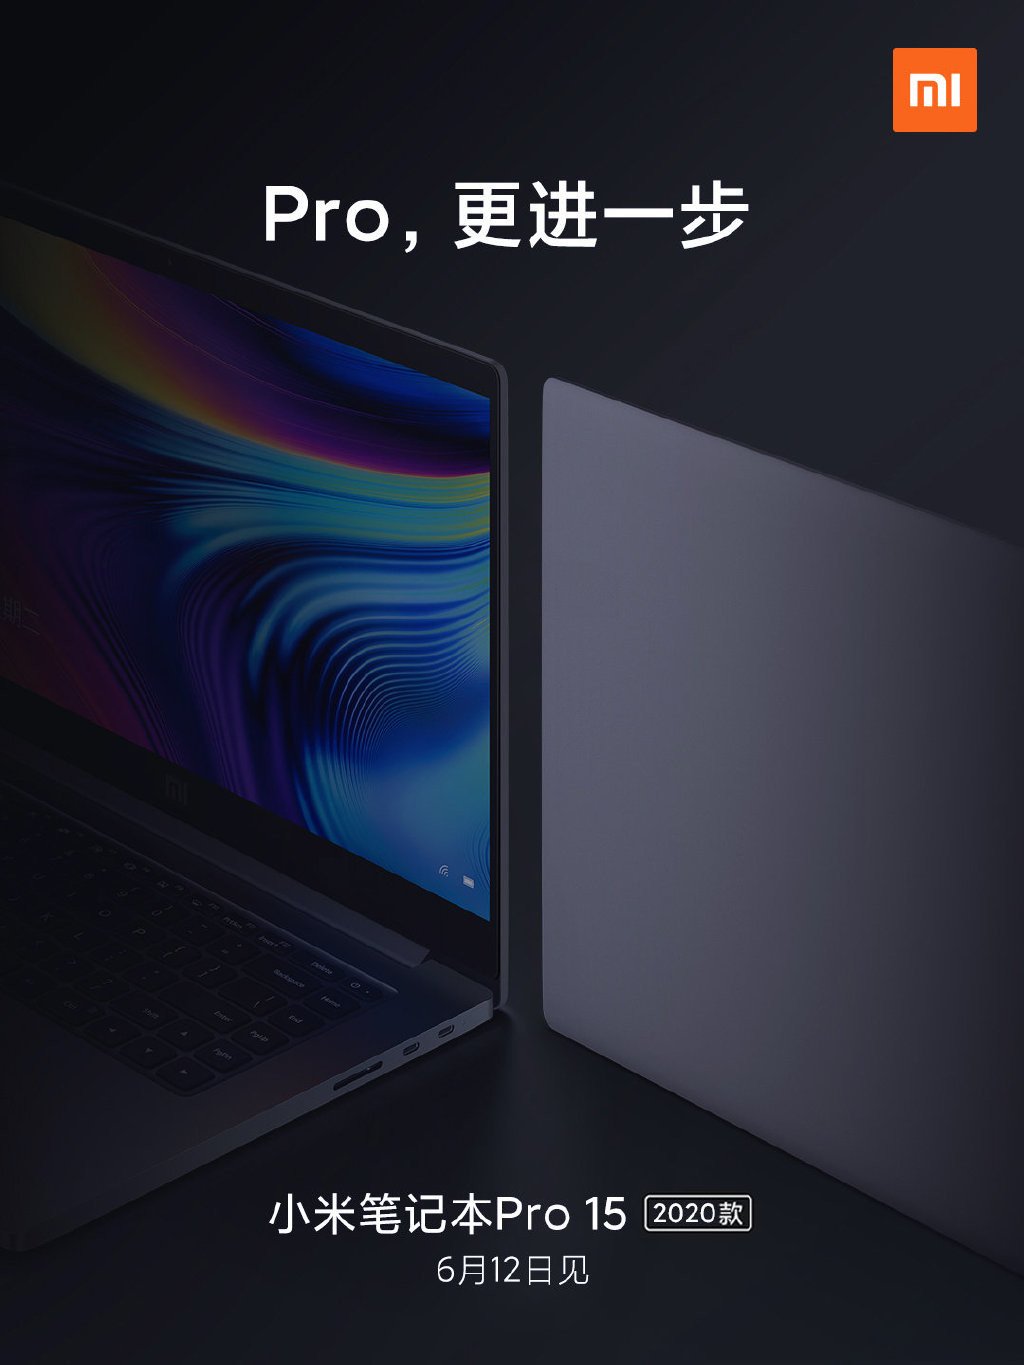 Mi Notebook Pro 15 2020 Pepa Lautele